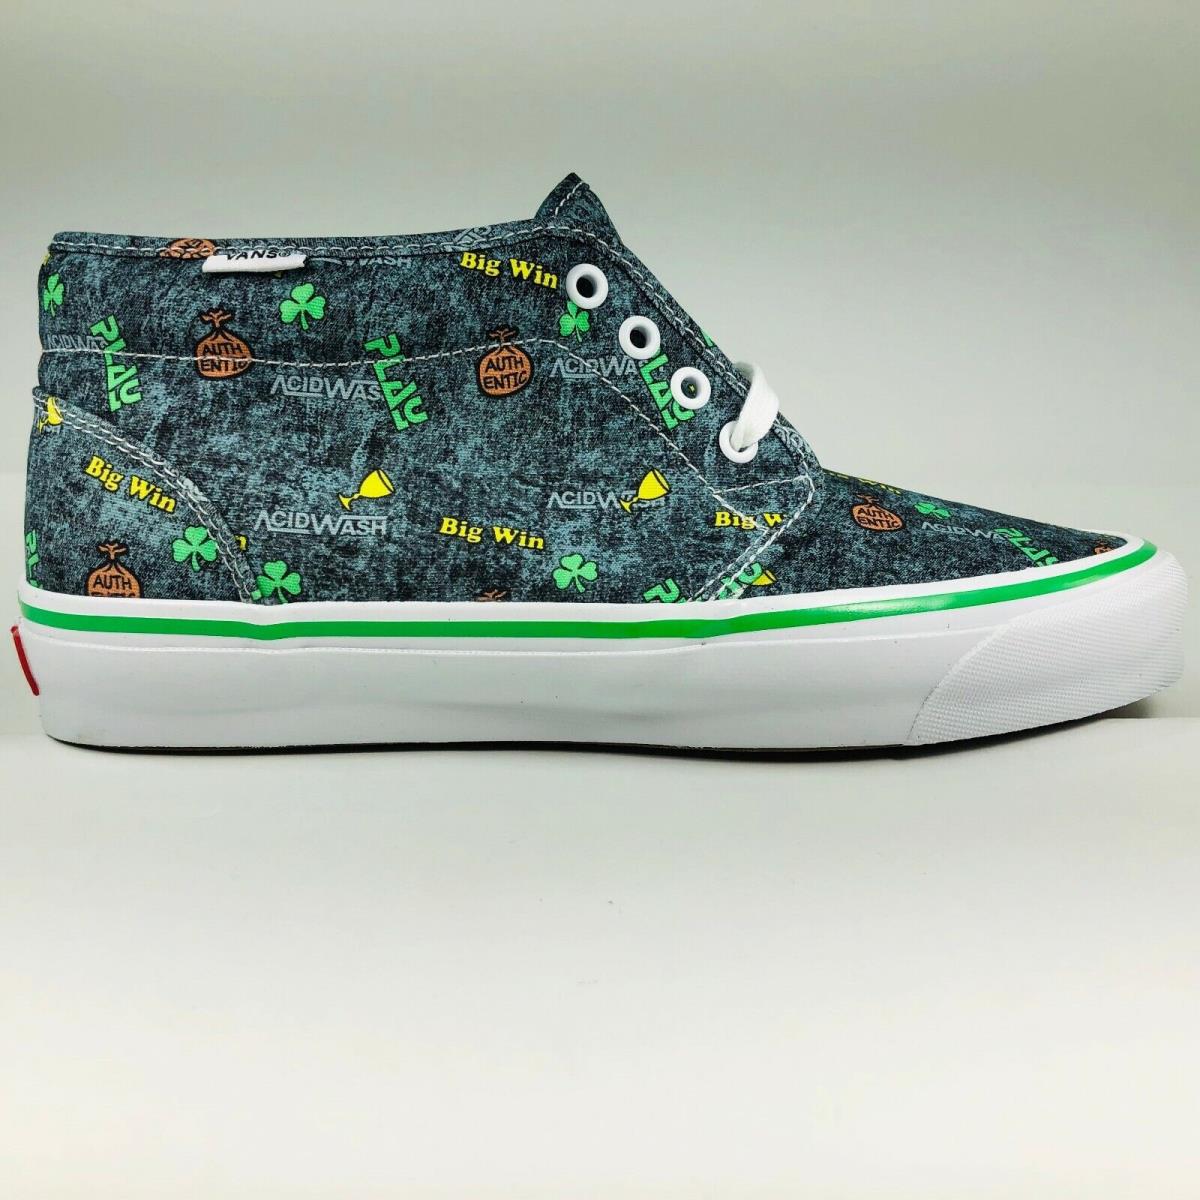 Vans OG Chukka LX Fergadelic Multicolor Acid Wash Skateboard Shoes Mens Size 10